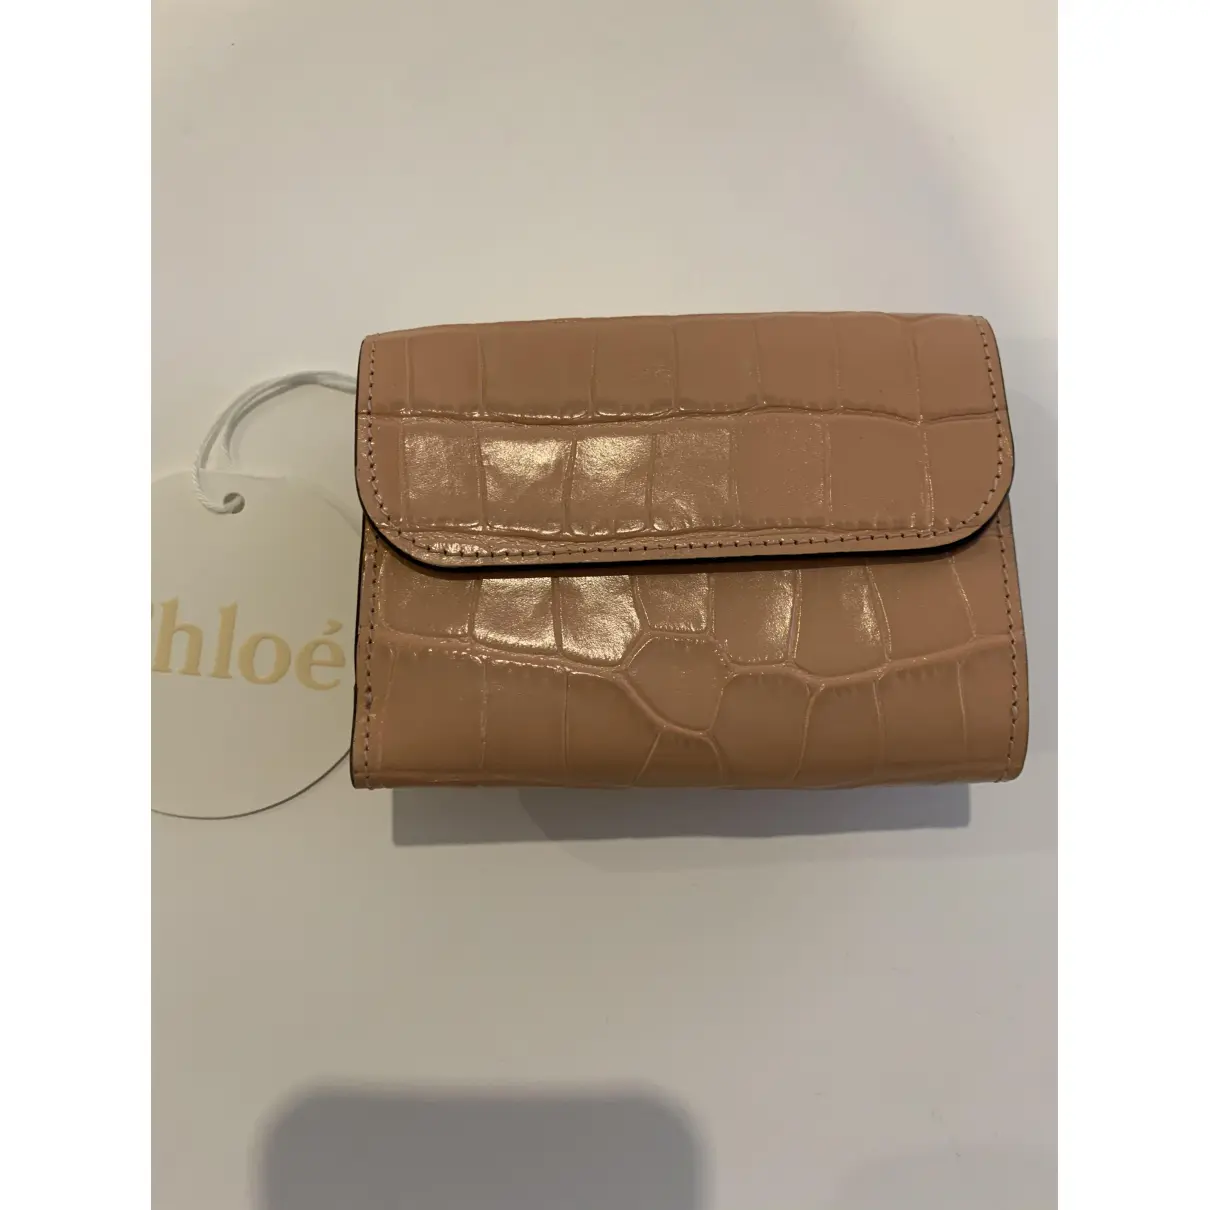 Buy Chloé C wallet online